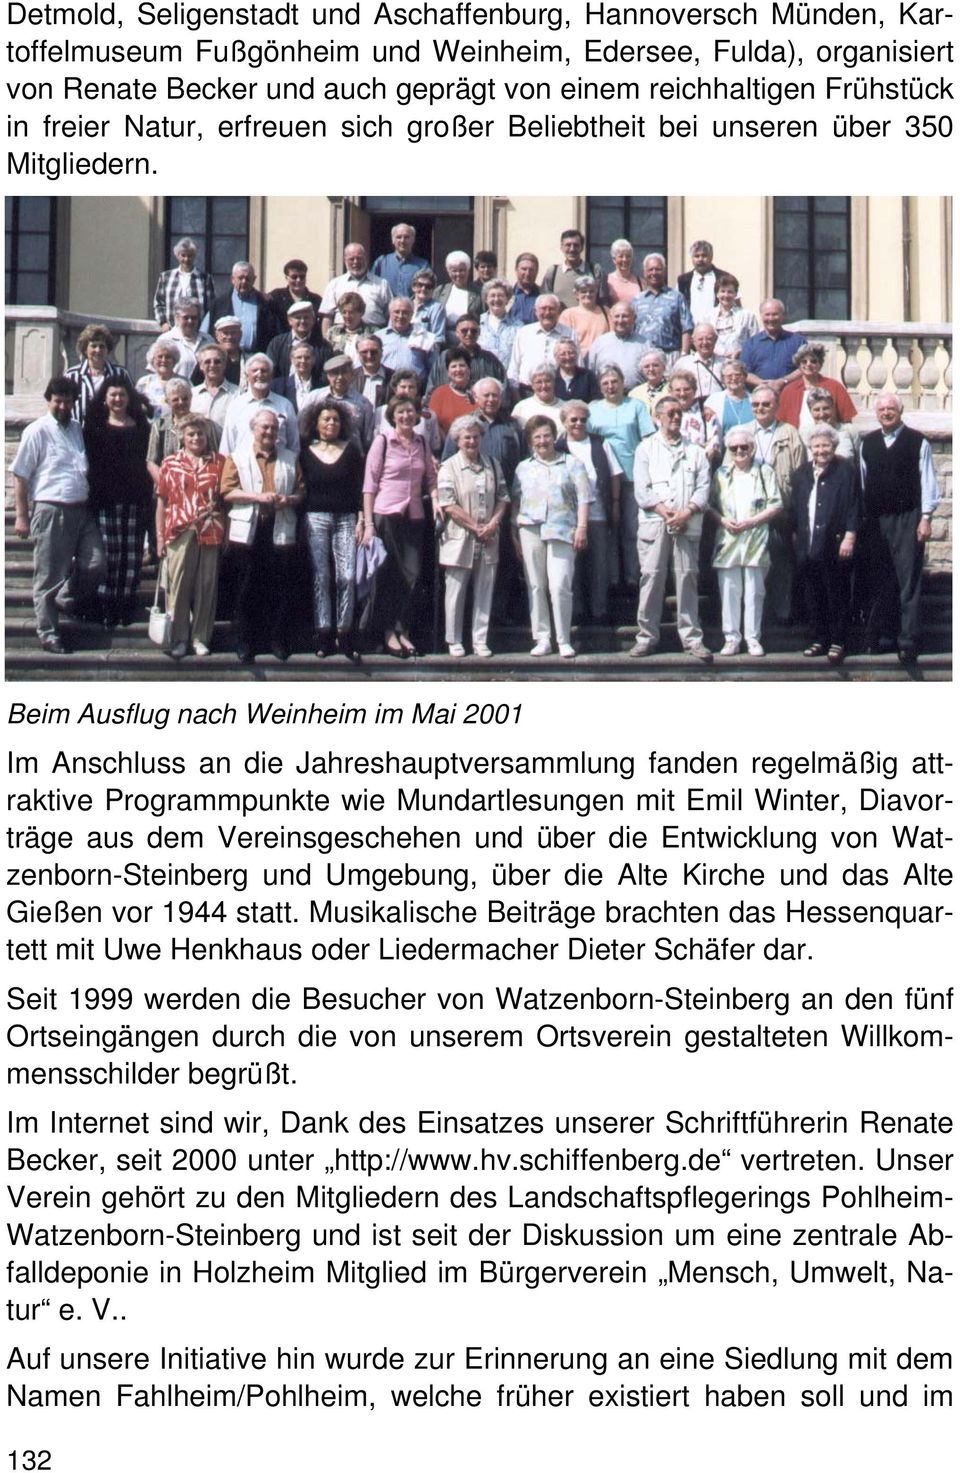 Beim Ausflug nach Weinheim im Mai 2001 Im Anschluss an die Jahreshauptversammlung fanden regelmäßig attraktive Programmpunkte wie Mundartlesungen mit Emil Winter, Diavorträge aus dem Vereinsgeschehen